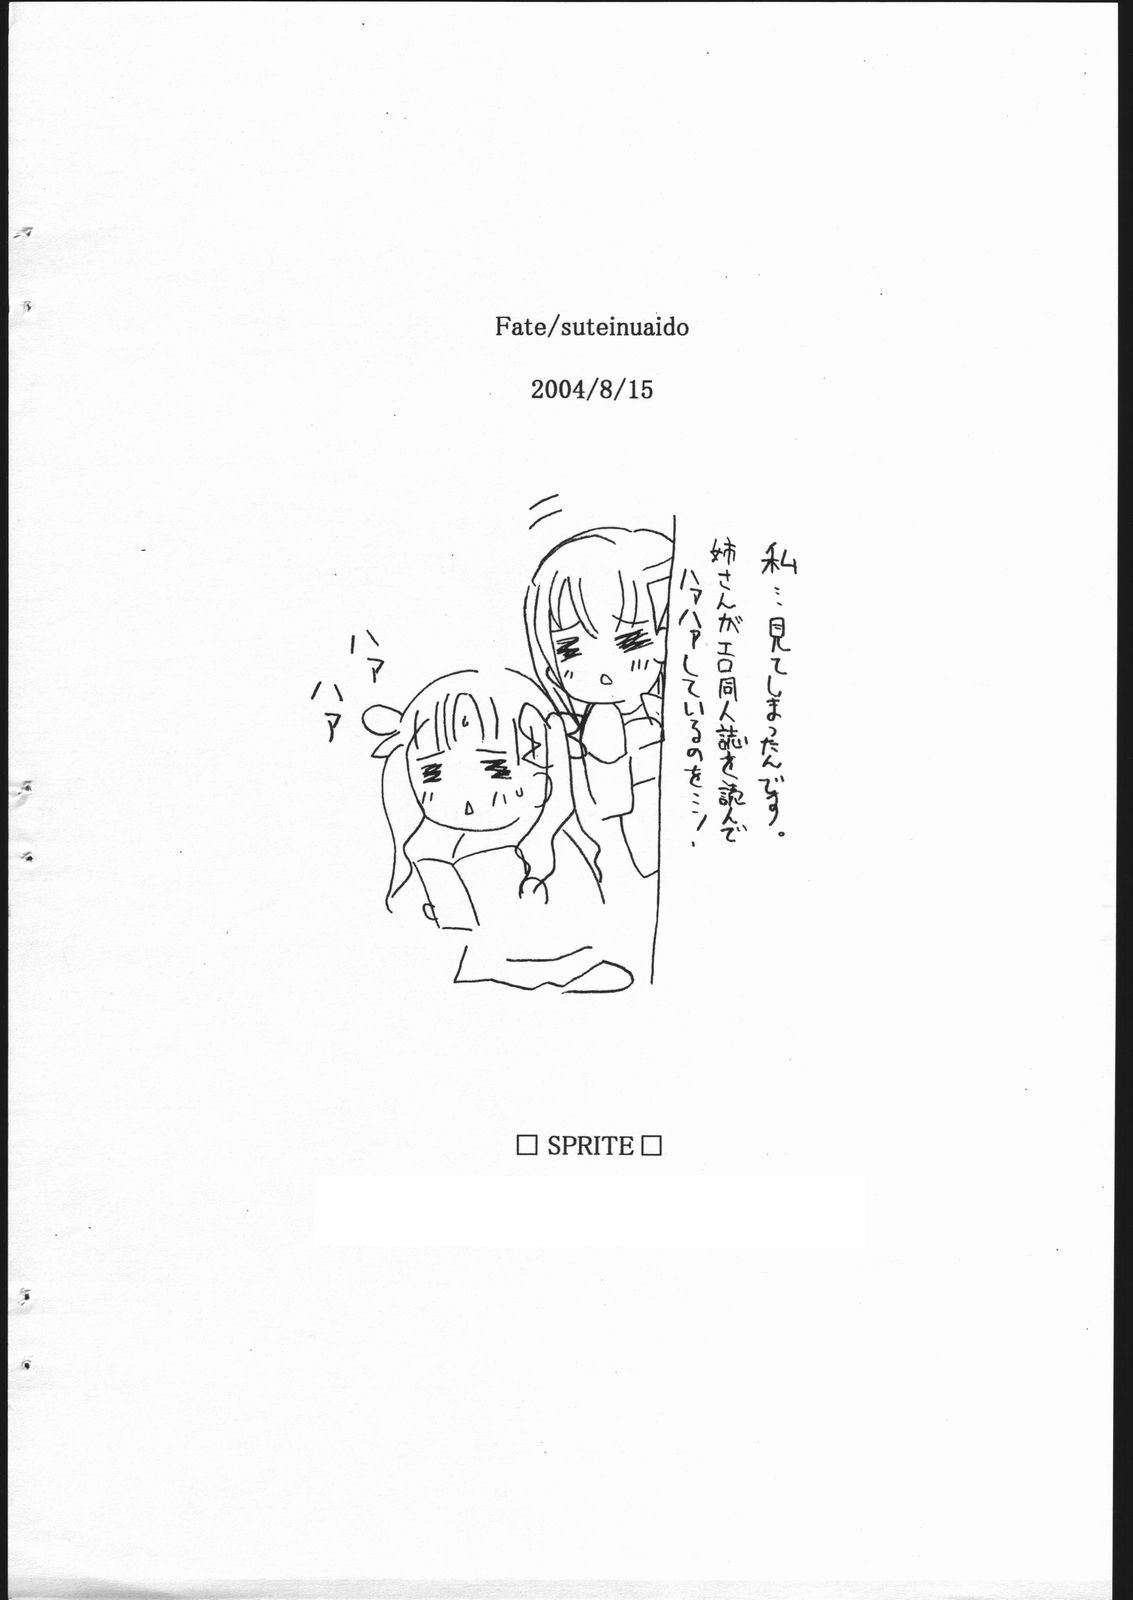 [Sprite] Fate/Sutei Inu Ai Do (Fate/Stay Night) page 25 full